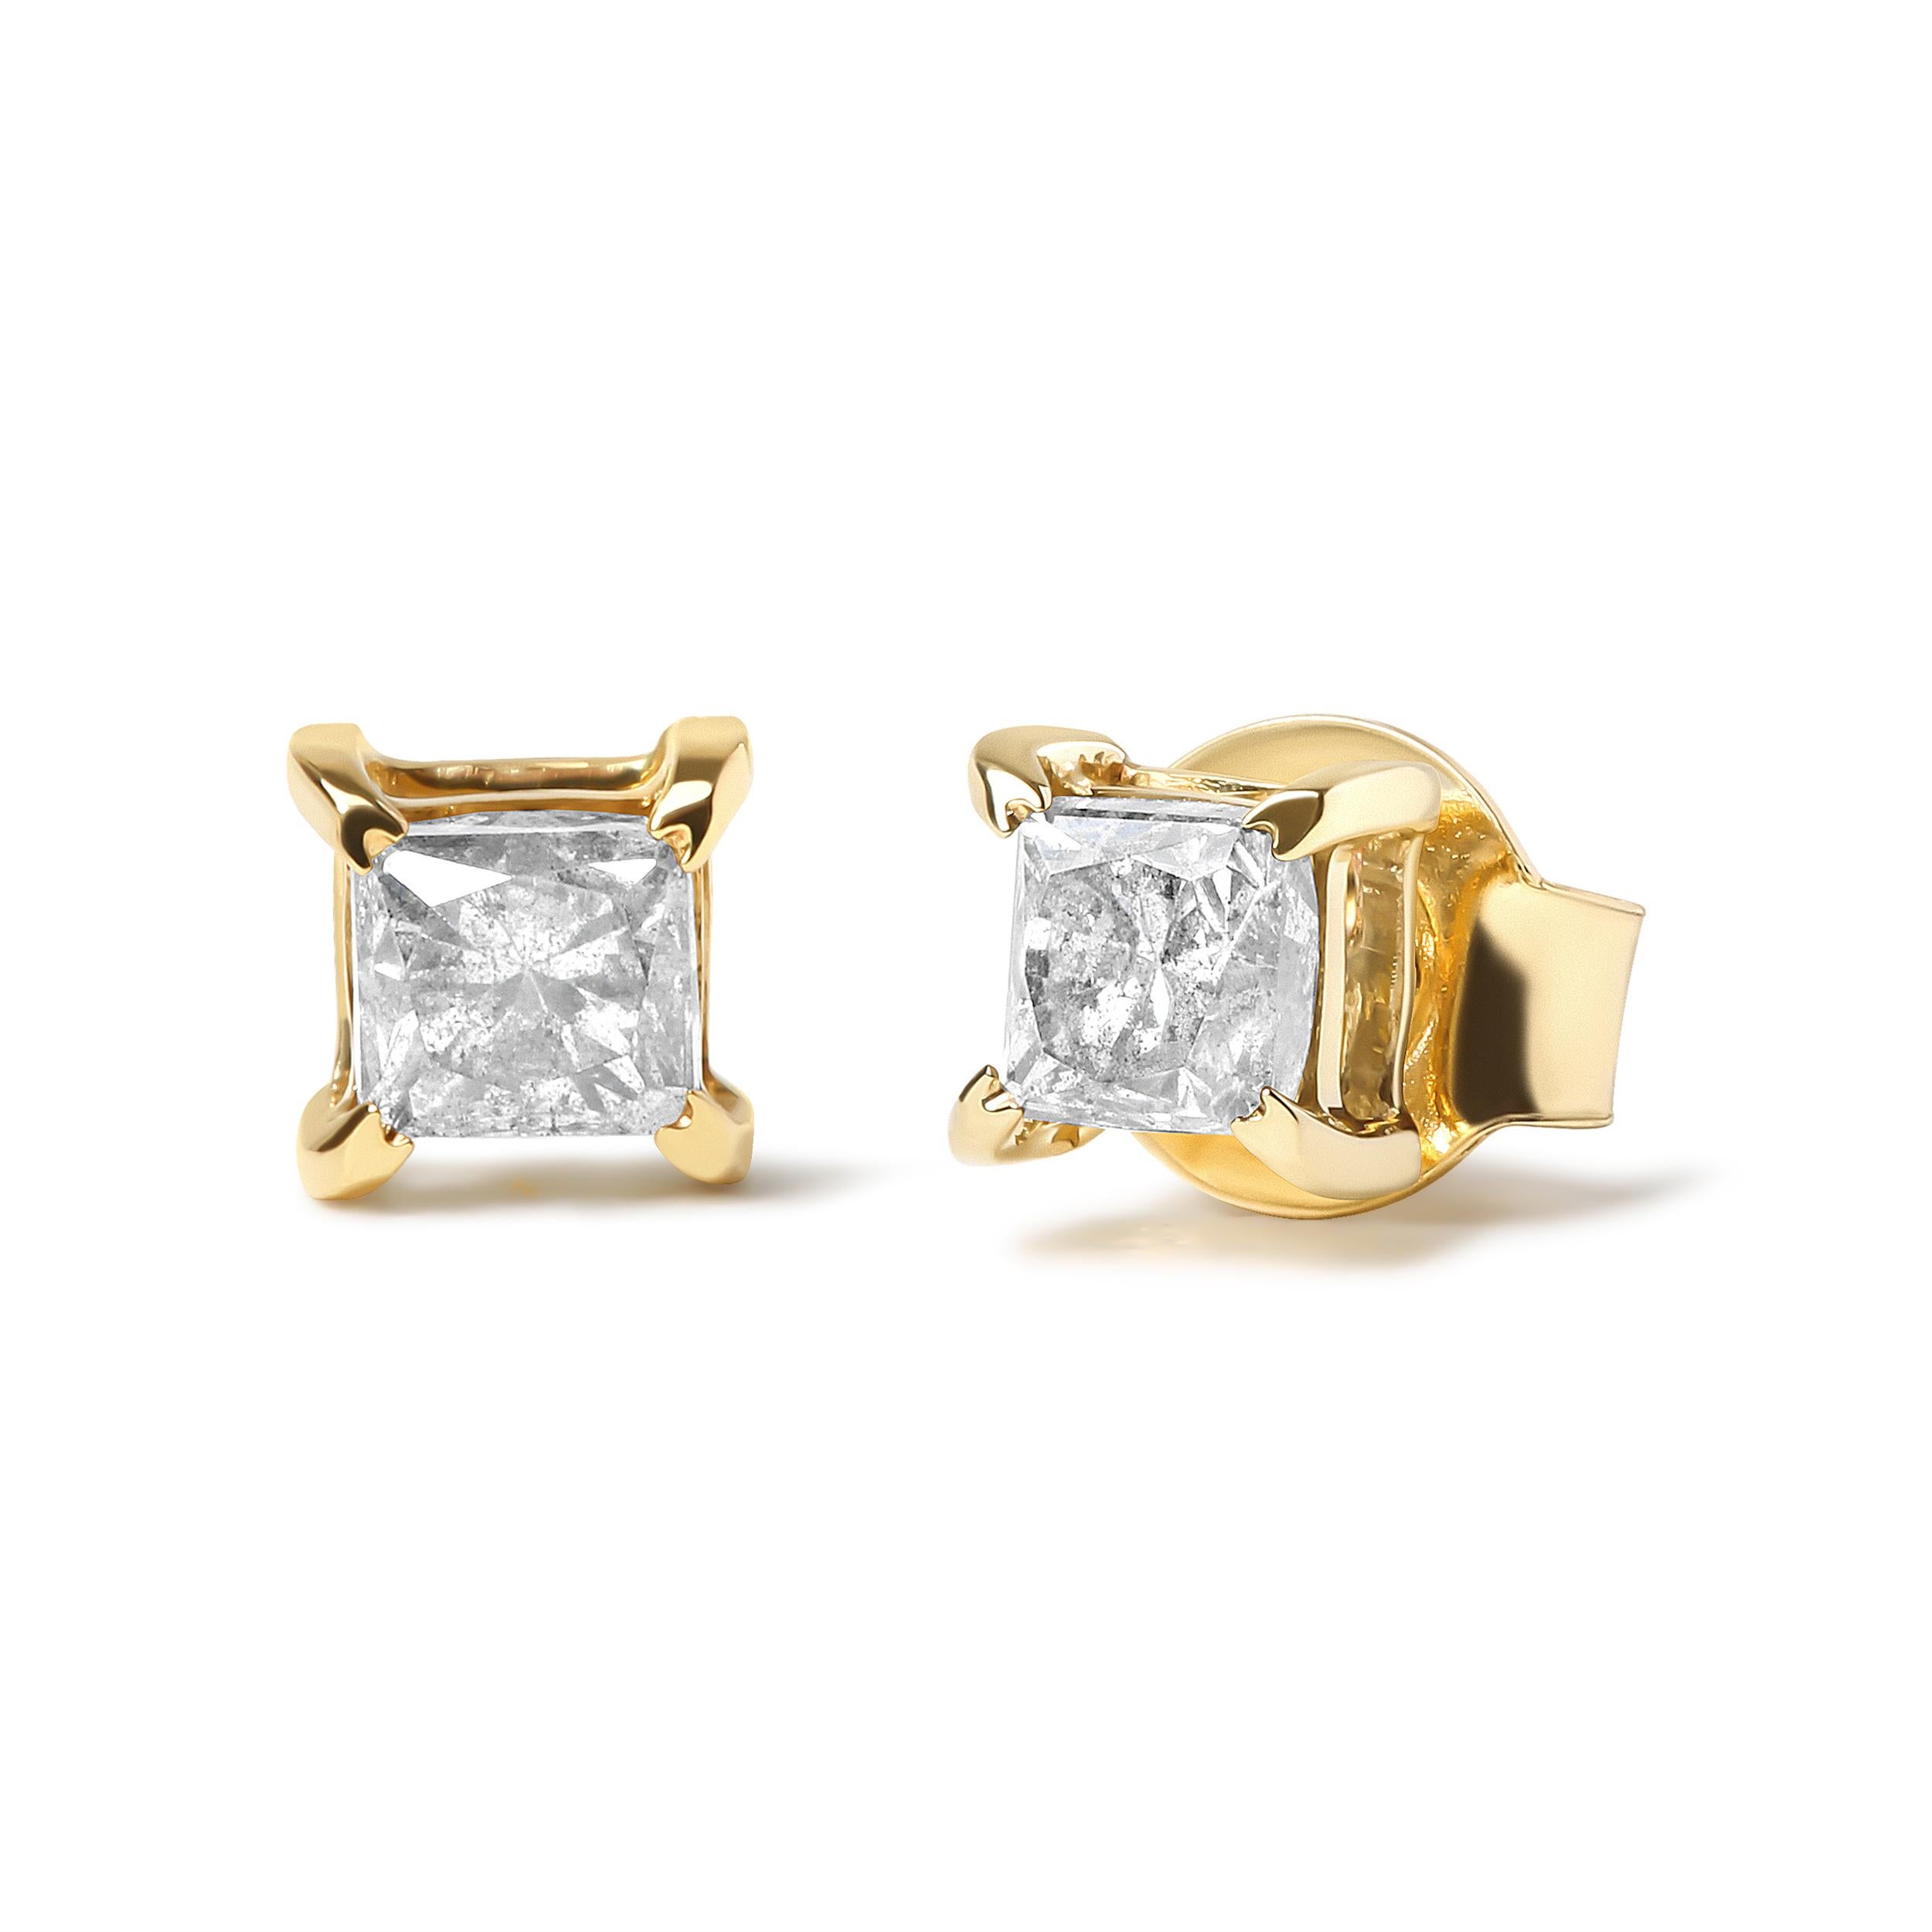 Unterstreichen Sie Ihre Eleganz mit diesen strahlenden IGI-zertifizierten Prinzessinnen-Ohrsteckern. Sie sind aus 14-karätigem Gelbgold gefertigt und mit zwei natürlichen Diamanten von je 5/8 Karat besetzt. Die Diamanten sind in klassischer